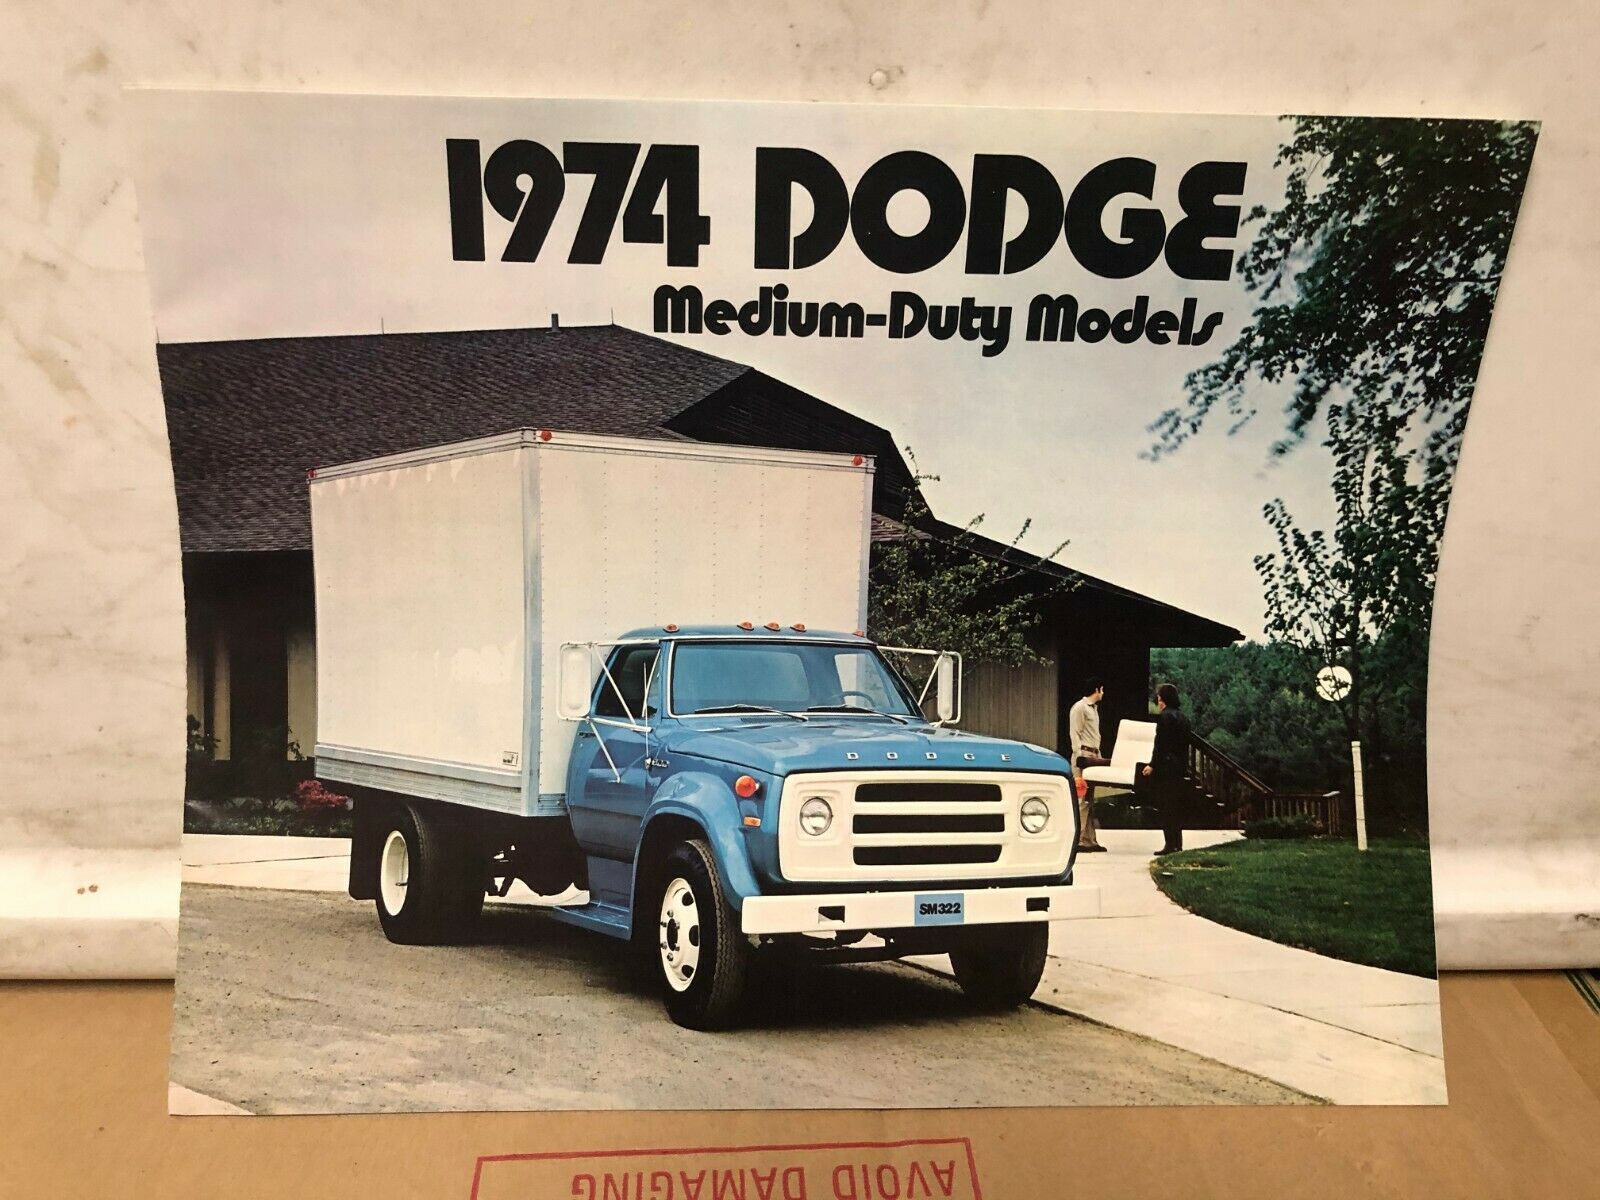 Original 1974 Dodge Medium Duty Models Sales Brochure